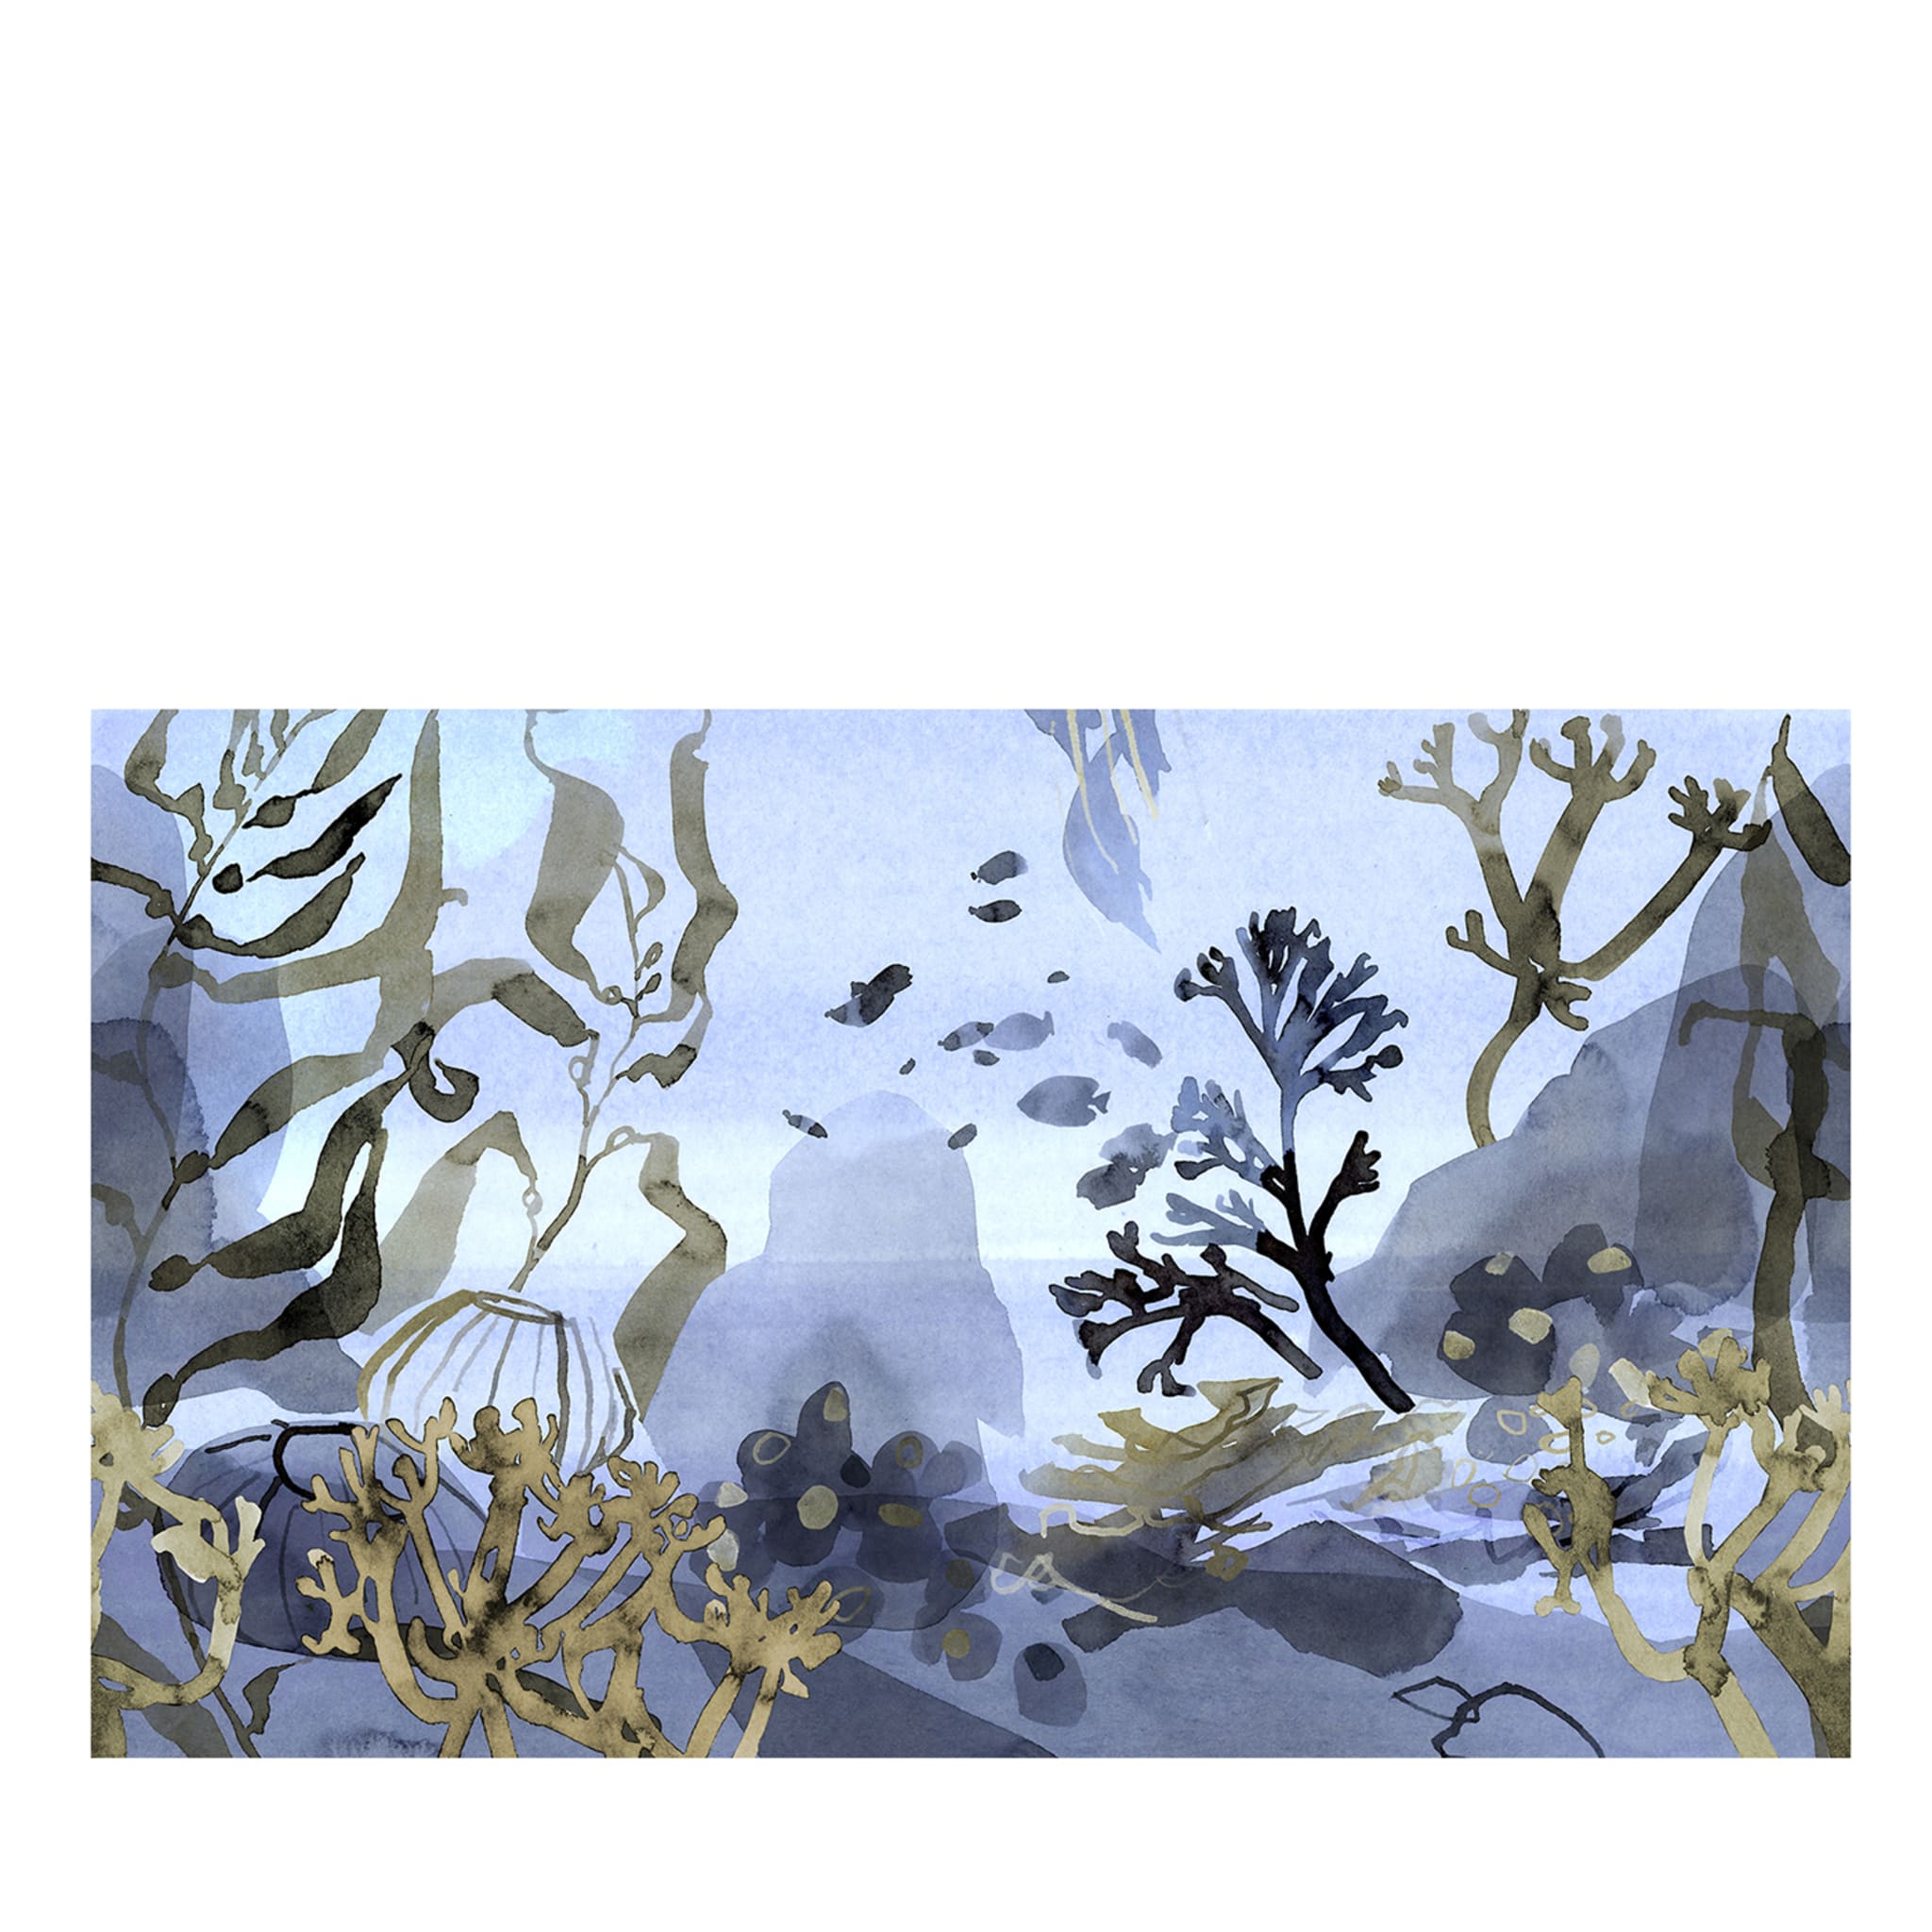 Coralli Wallpaper by Karin Kellner #2 - Main view